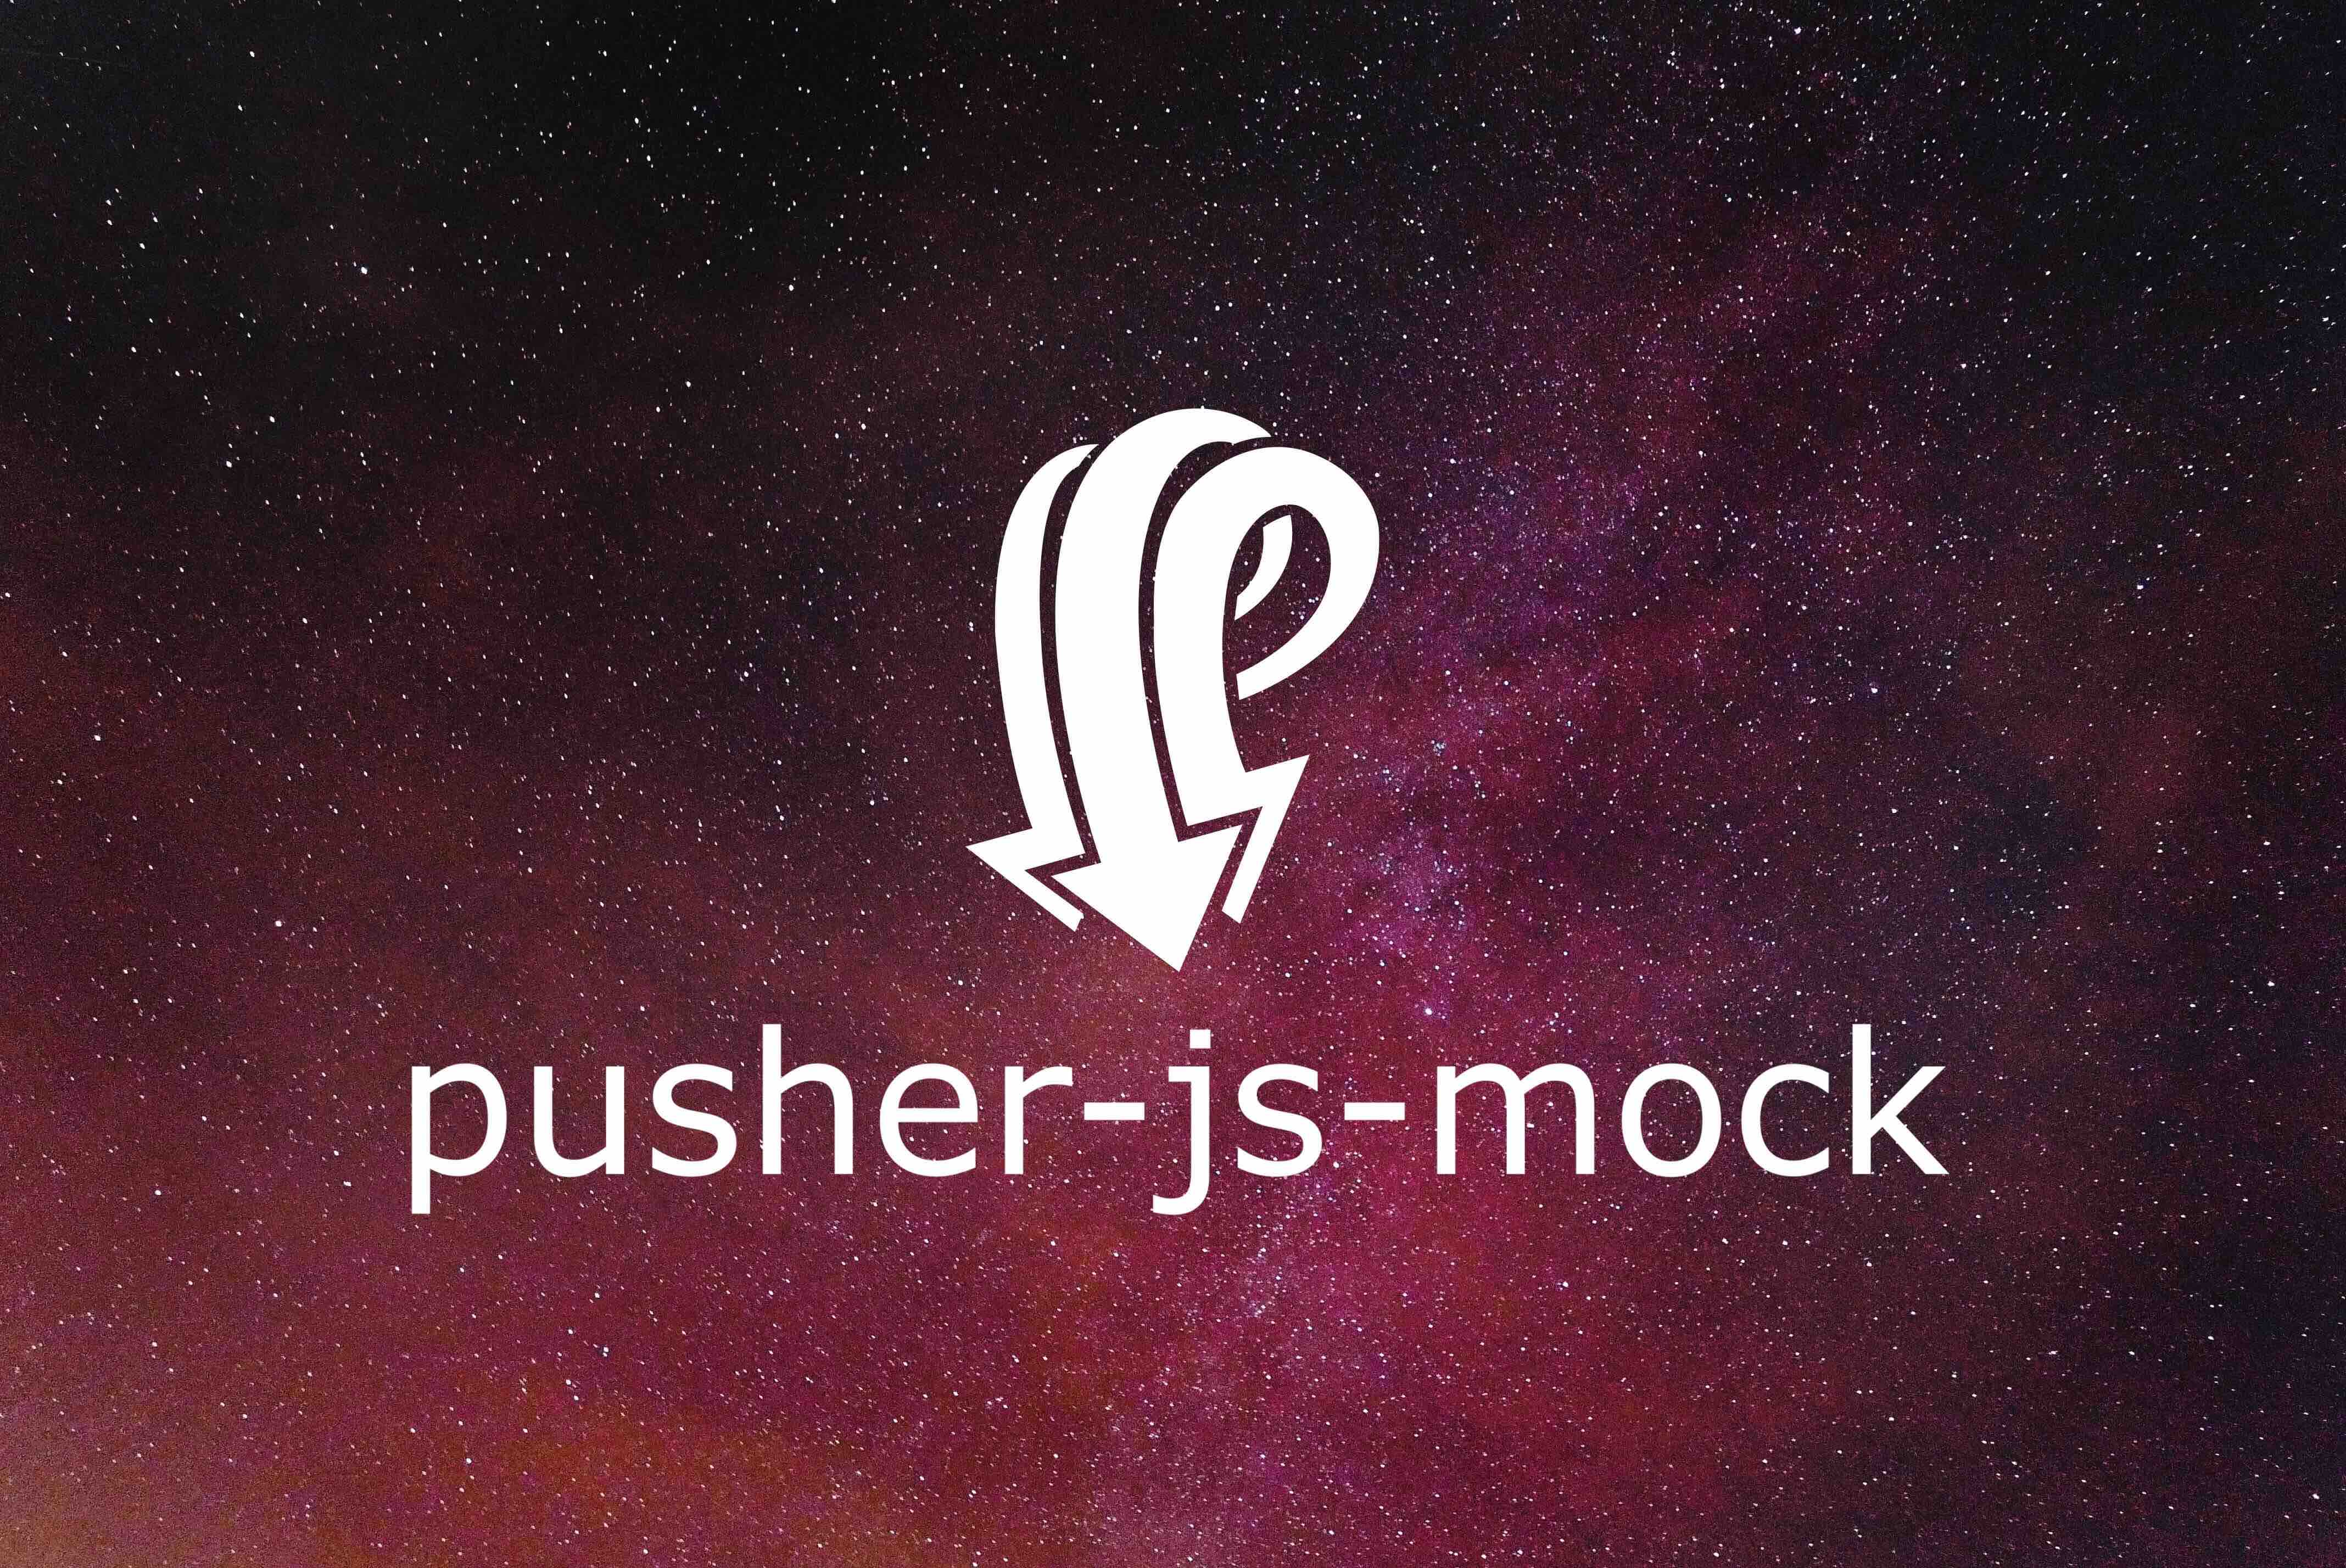 pusher-js-mock logo